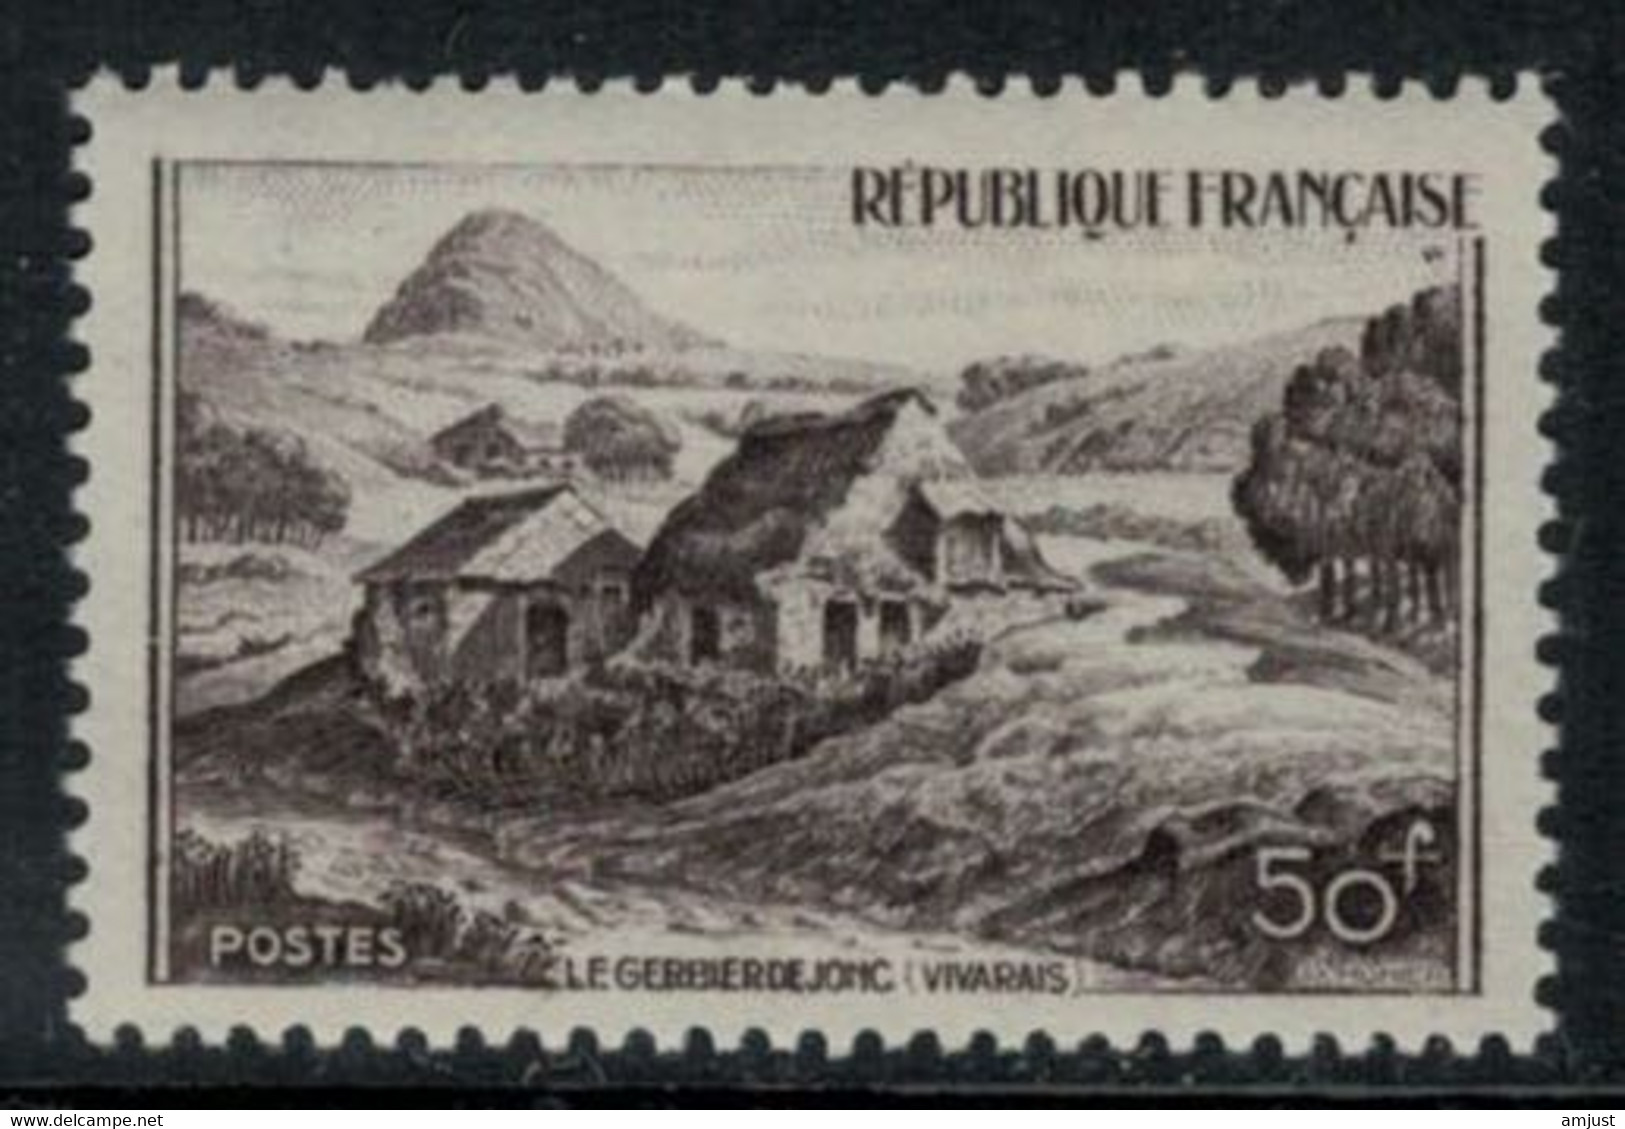 France // 1949 // Monuments Et Sites, Mont Gerbier De Jonc  Neuf** MNH No.843 Y&T (sans Charnière) - Unused Stamps